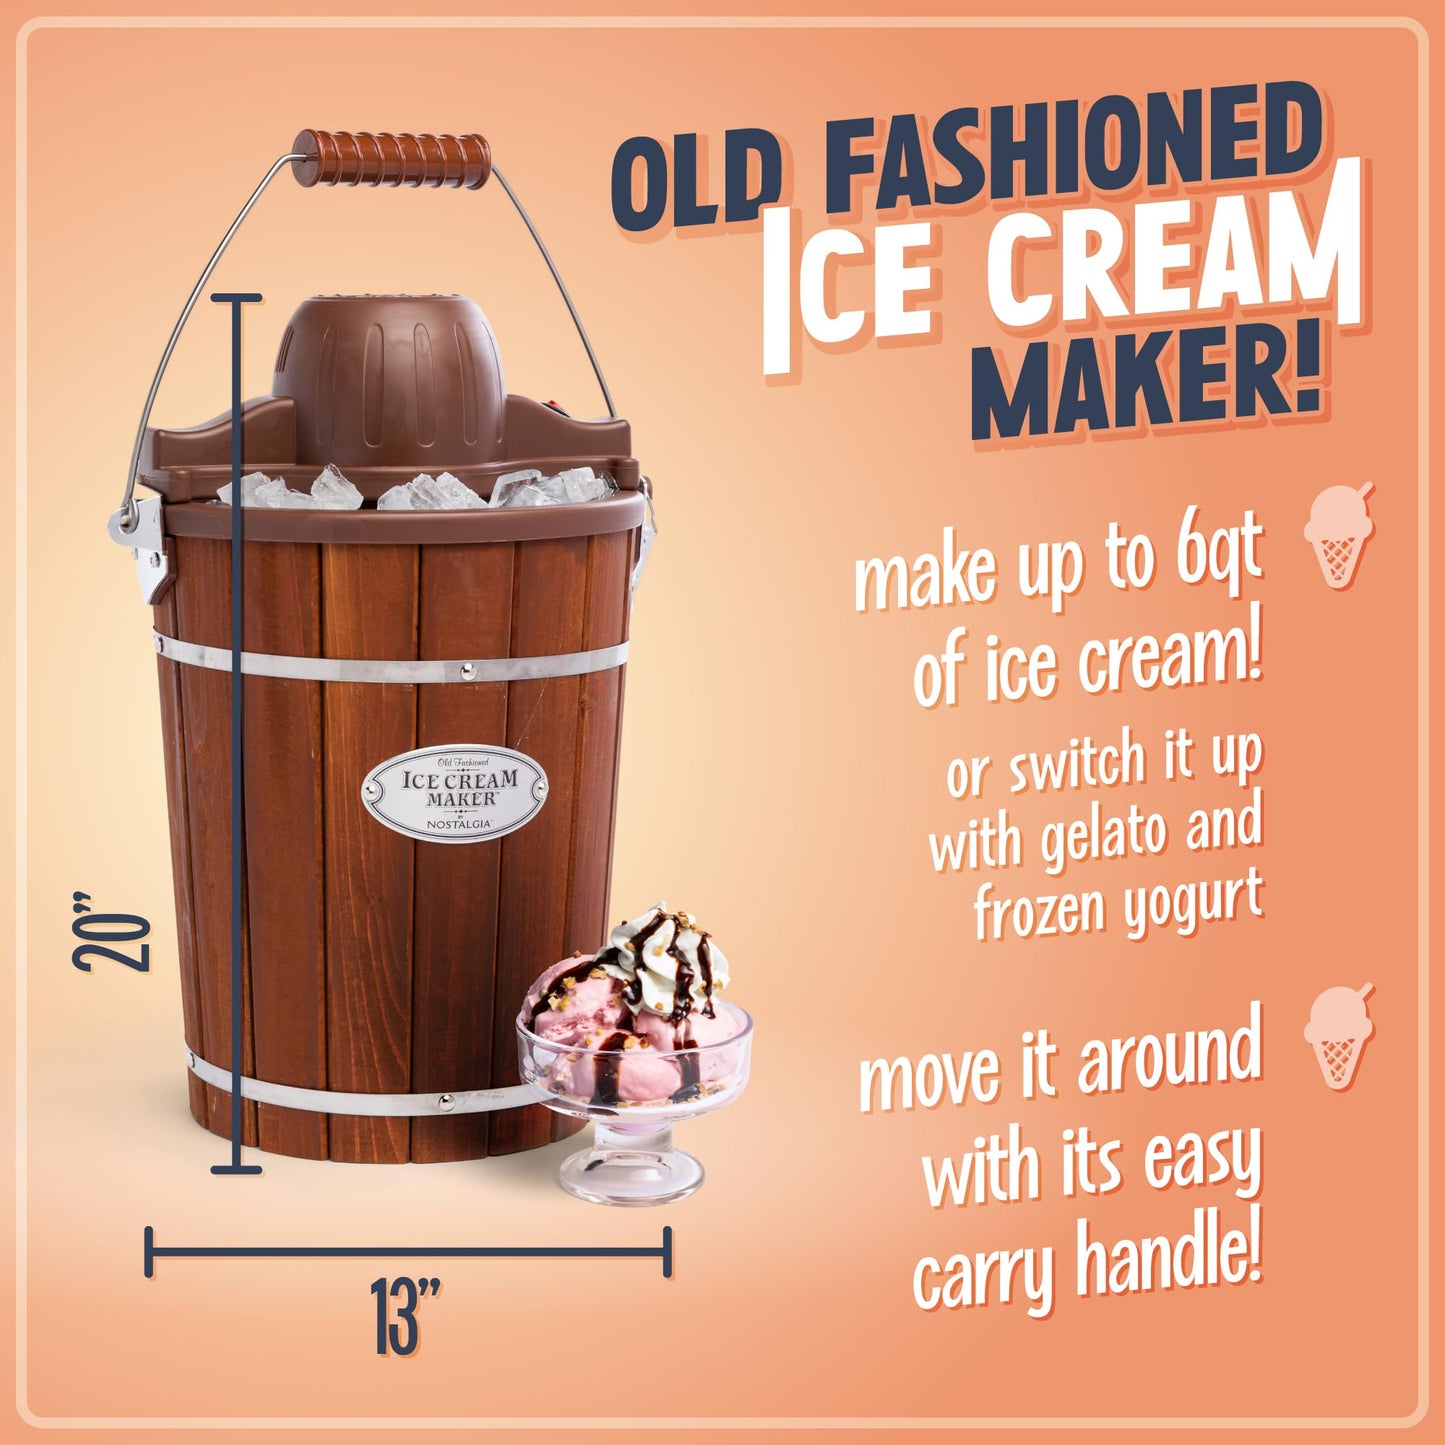 Nostalgia Electric Ice Cream Maker - Old Fashioned Soft Serve Ice Cream Machine Makes Frozen Yogurt or Gelato in Minutes - Fun Kitchen Appliance - Vintage Wooden Style - Dark Wood - 6 Quart